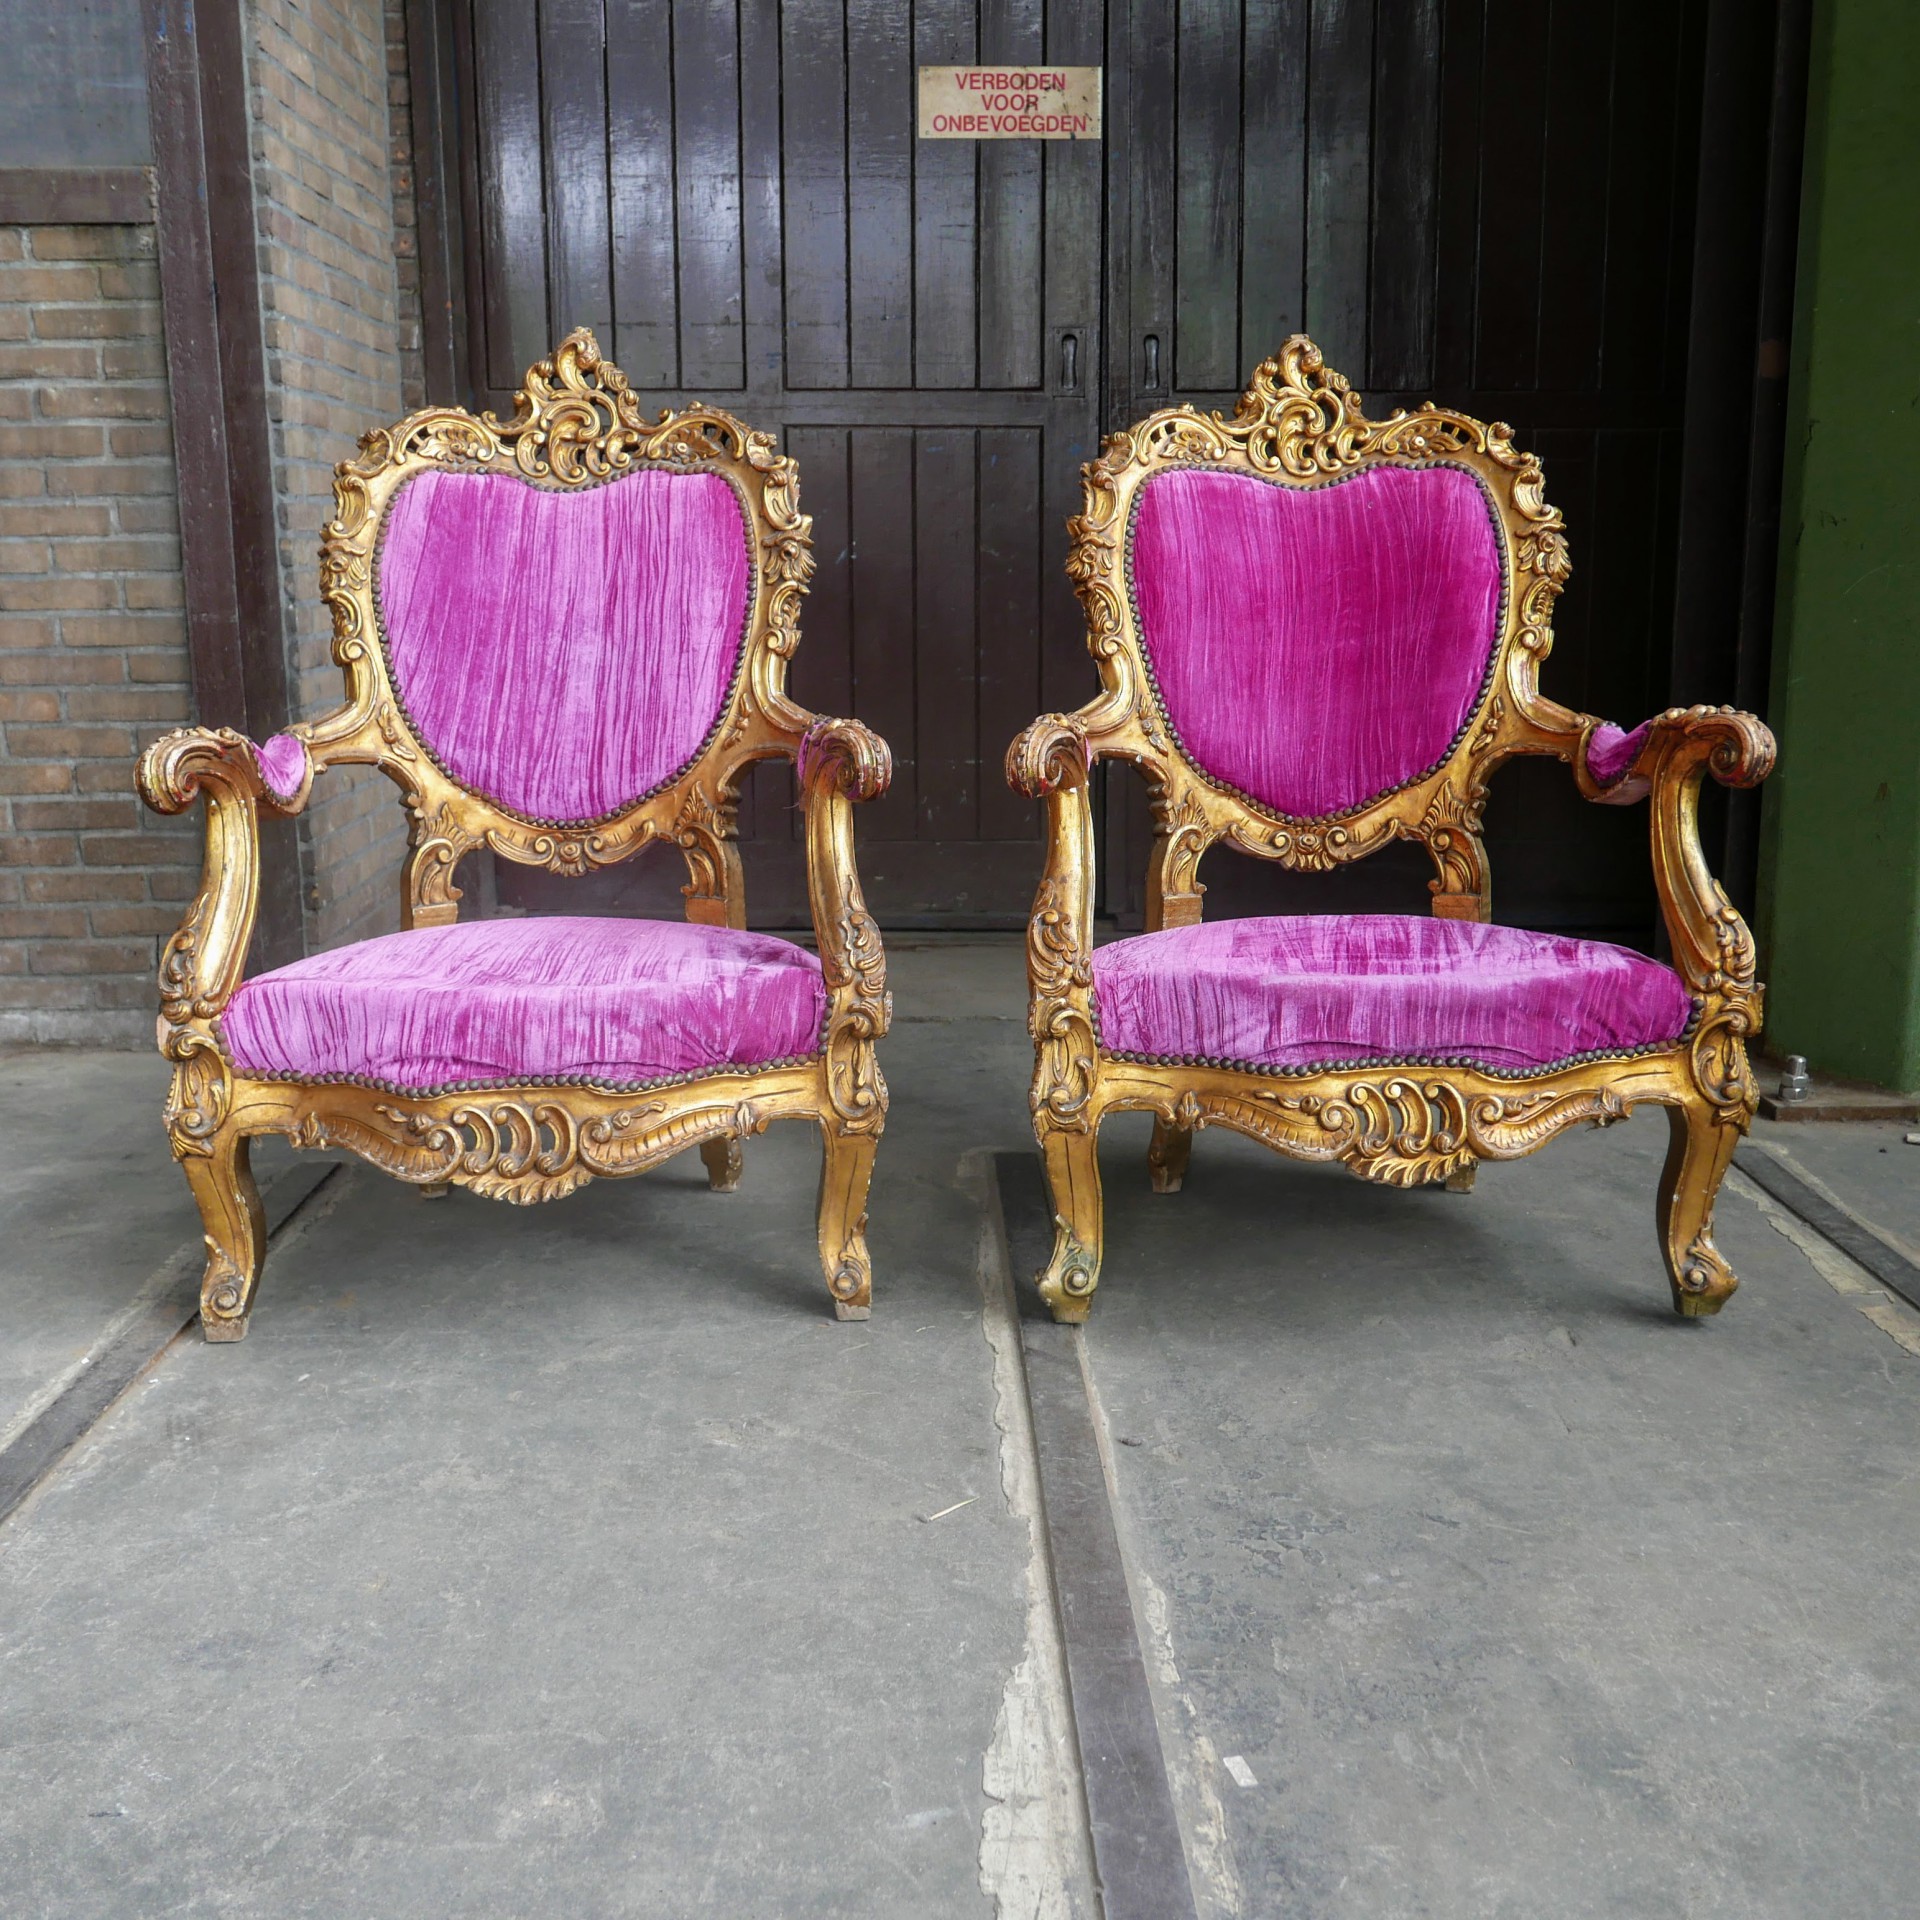 Leven van Vrijstelling kousen Barok vergulde fauteuil » Van Dijk & Ko